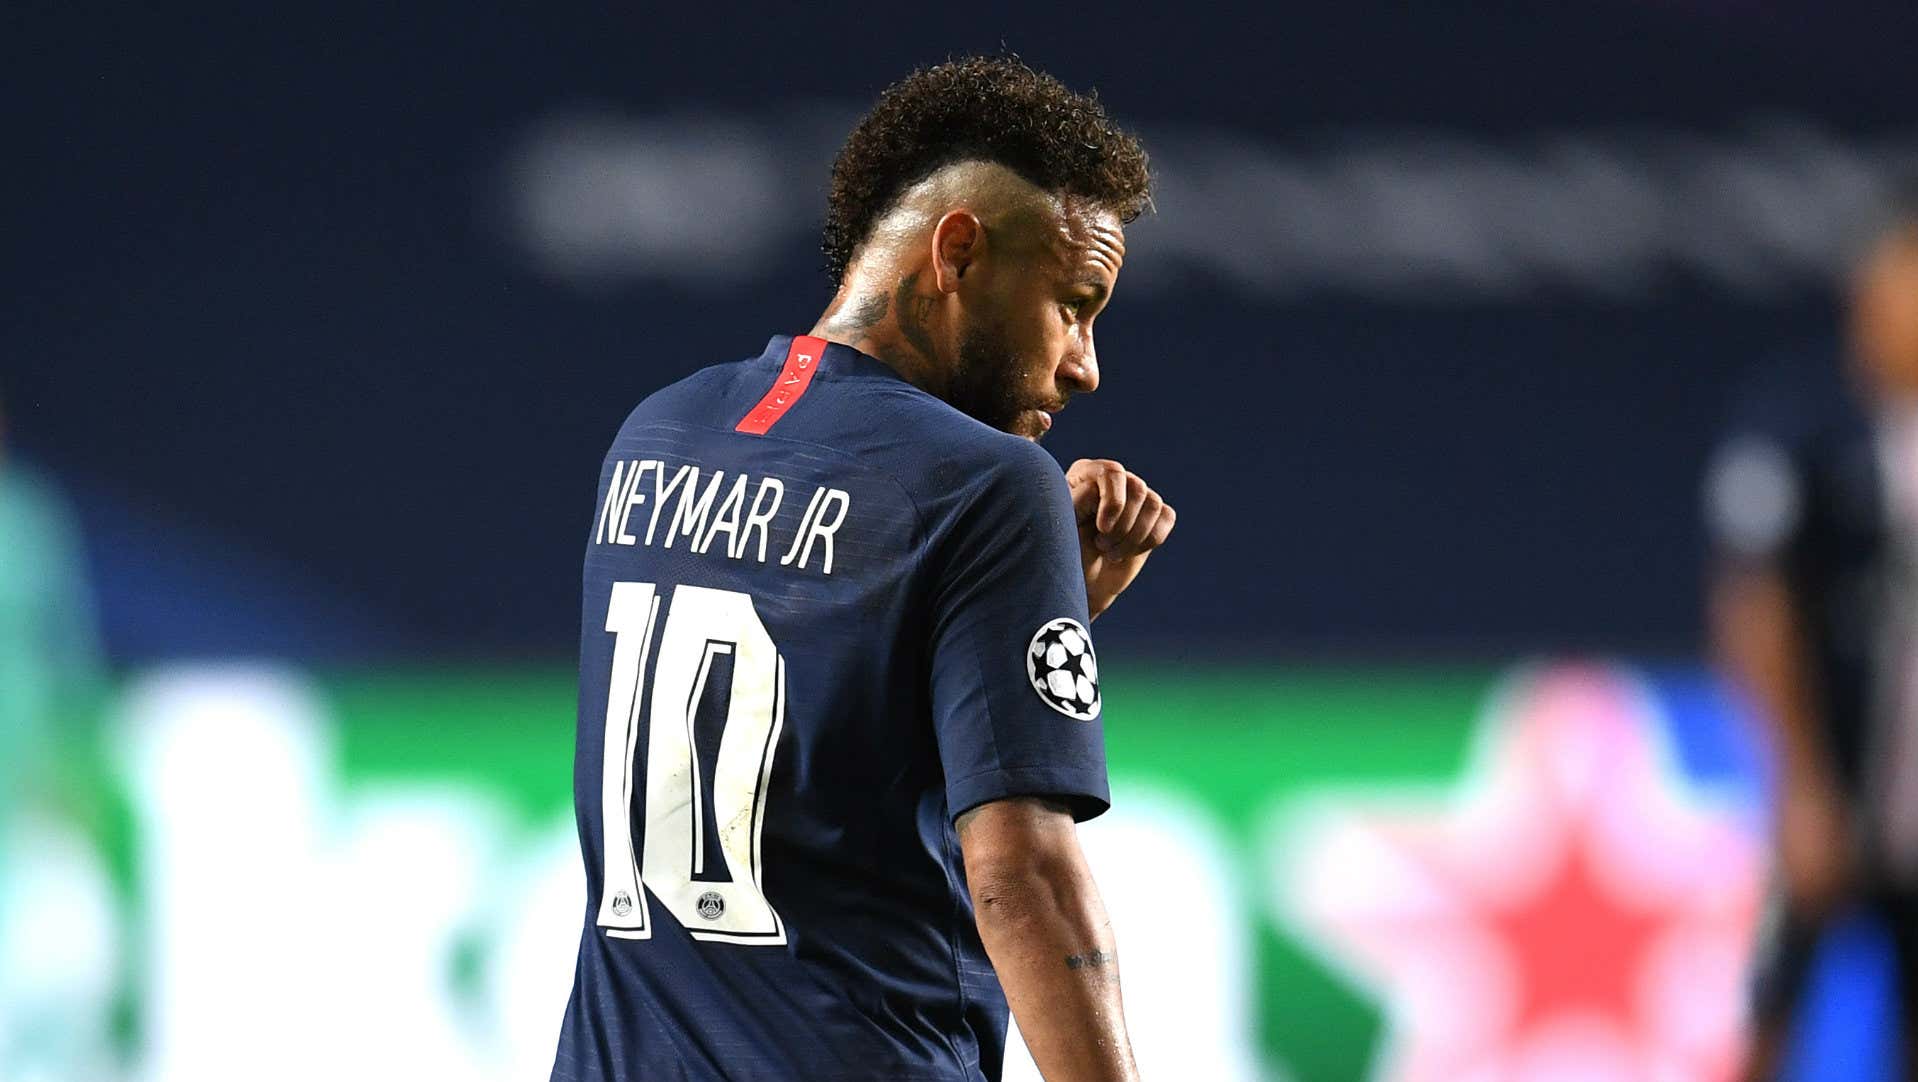 Neymar PSG vs Bayern Munich Champions League final 2019-20